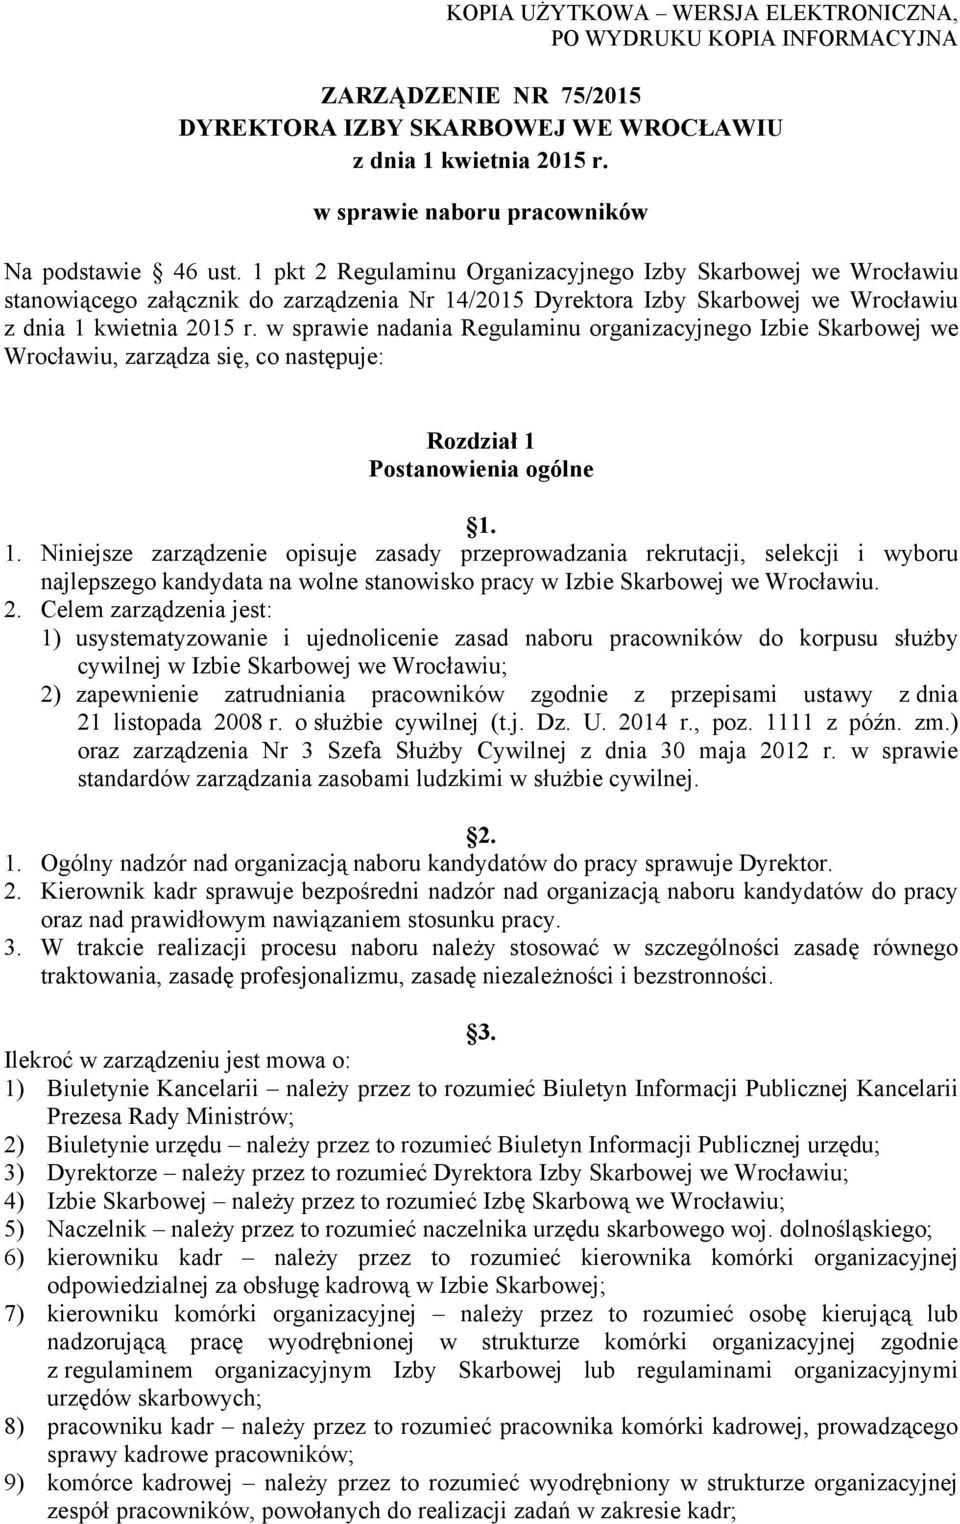 1 pkt 2 Regulaminu Organizacyjnego Izby Skarbowej we Wrocławiu stanowiącego załącznik do zarządzenia Nr 14/2015 Dyrektora Izby Skarbowej we Wrocławiu z dnia 1 kwietnia 2015 r.